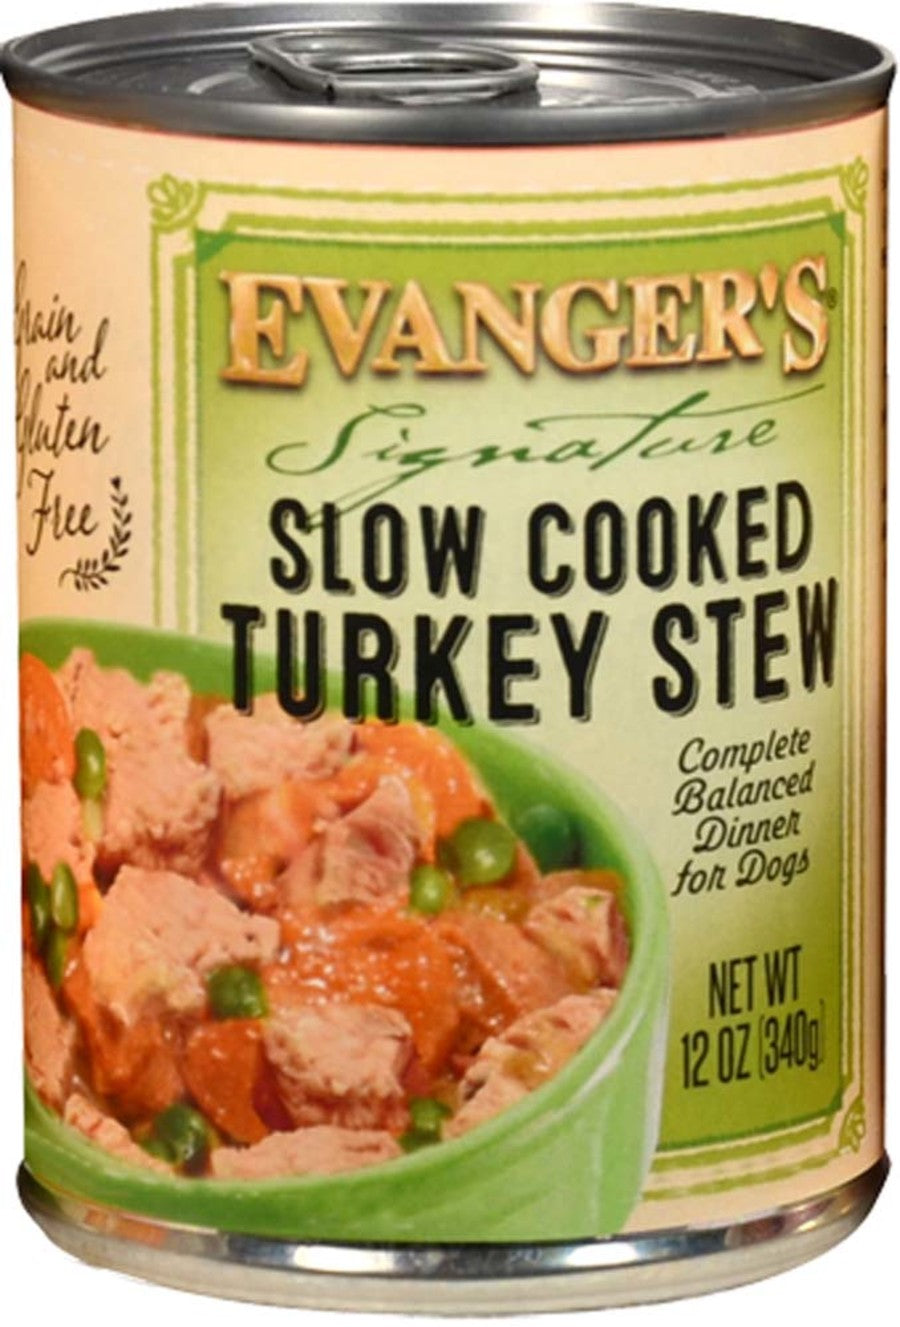 Slow Cooked Turkey Stew, 12ea/12 oz, 12 pk